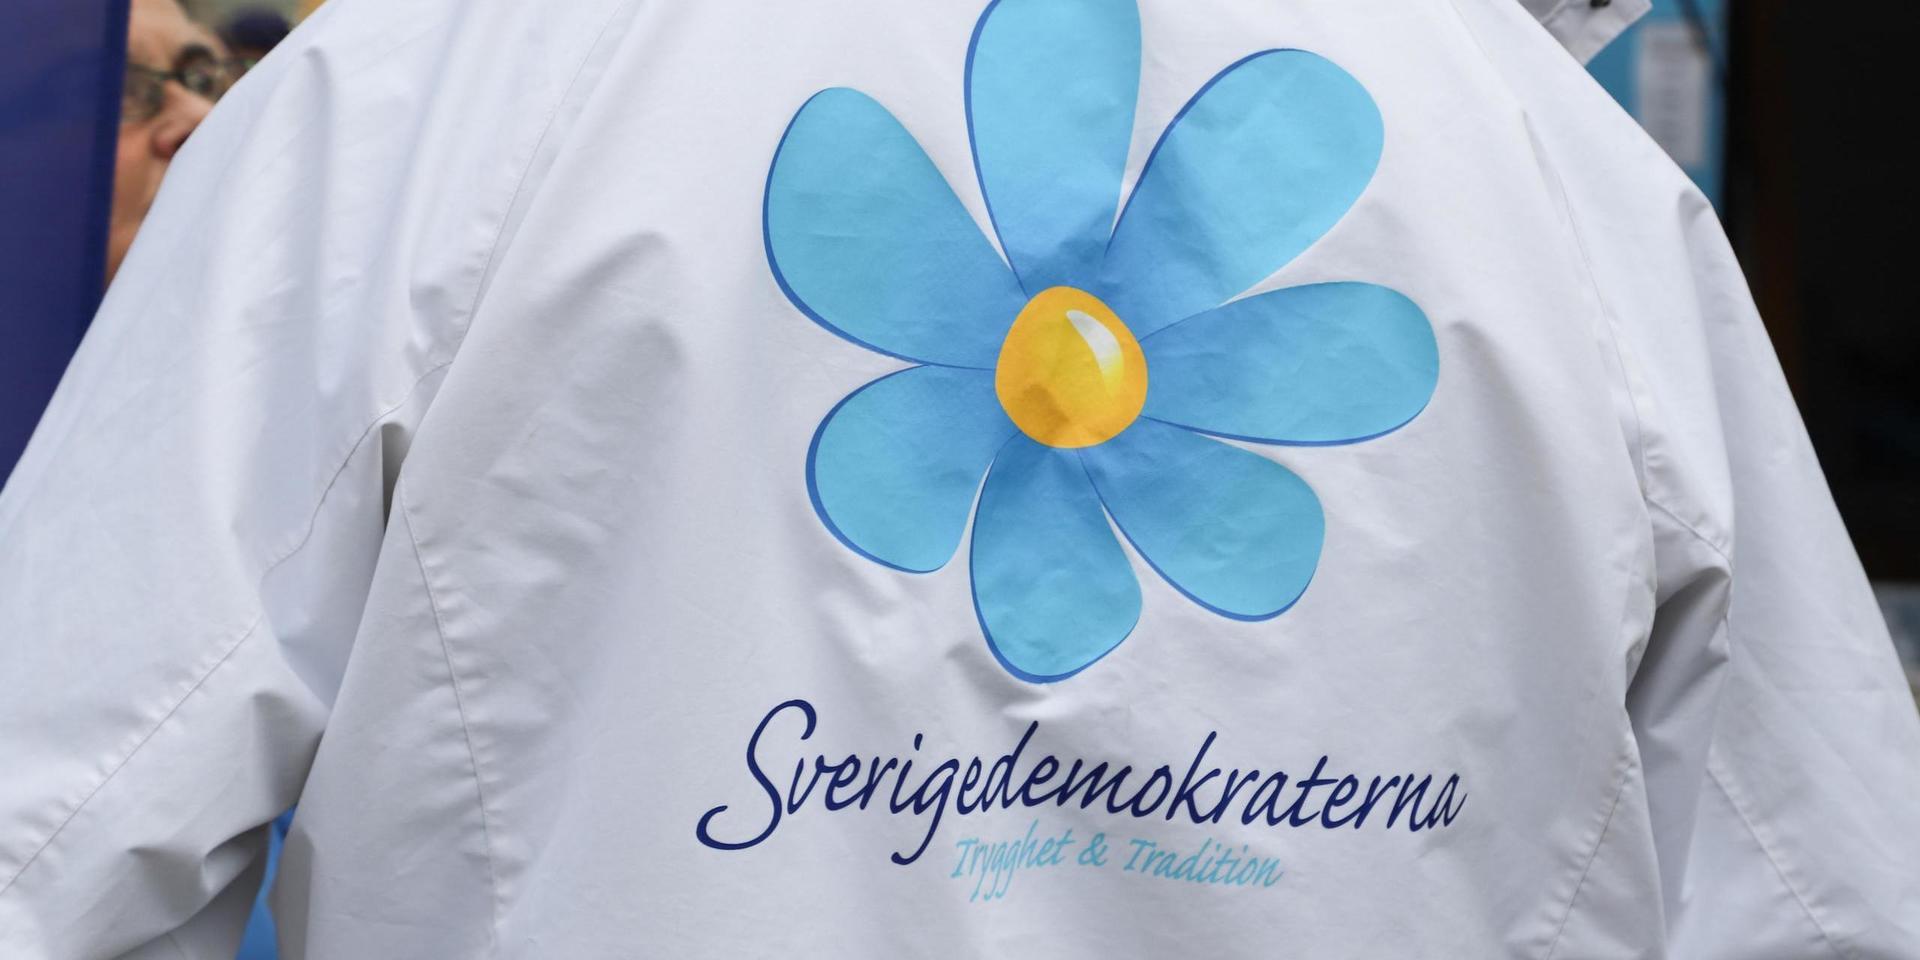 Sverigedemokraternas styrelse på Orust avgår efter att två medlemmar uteslutits av partistyrelsen. 